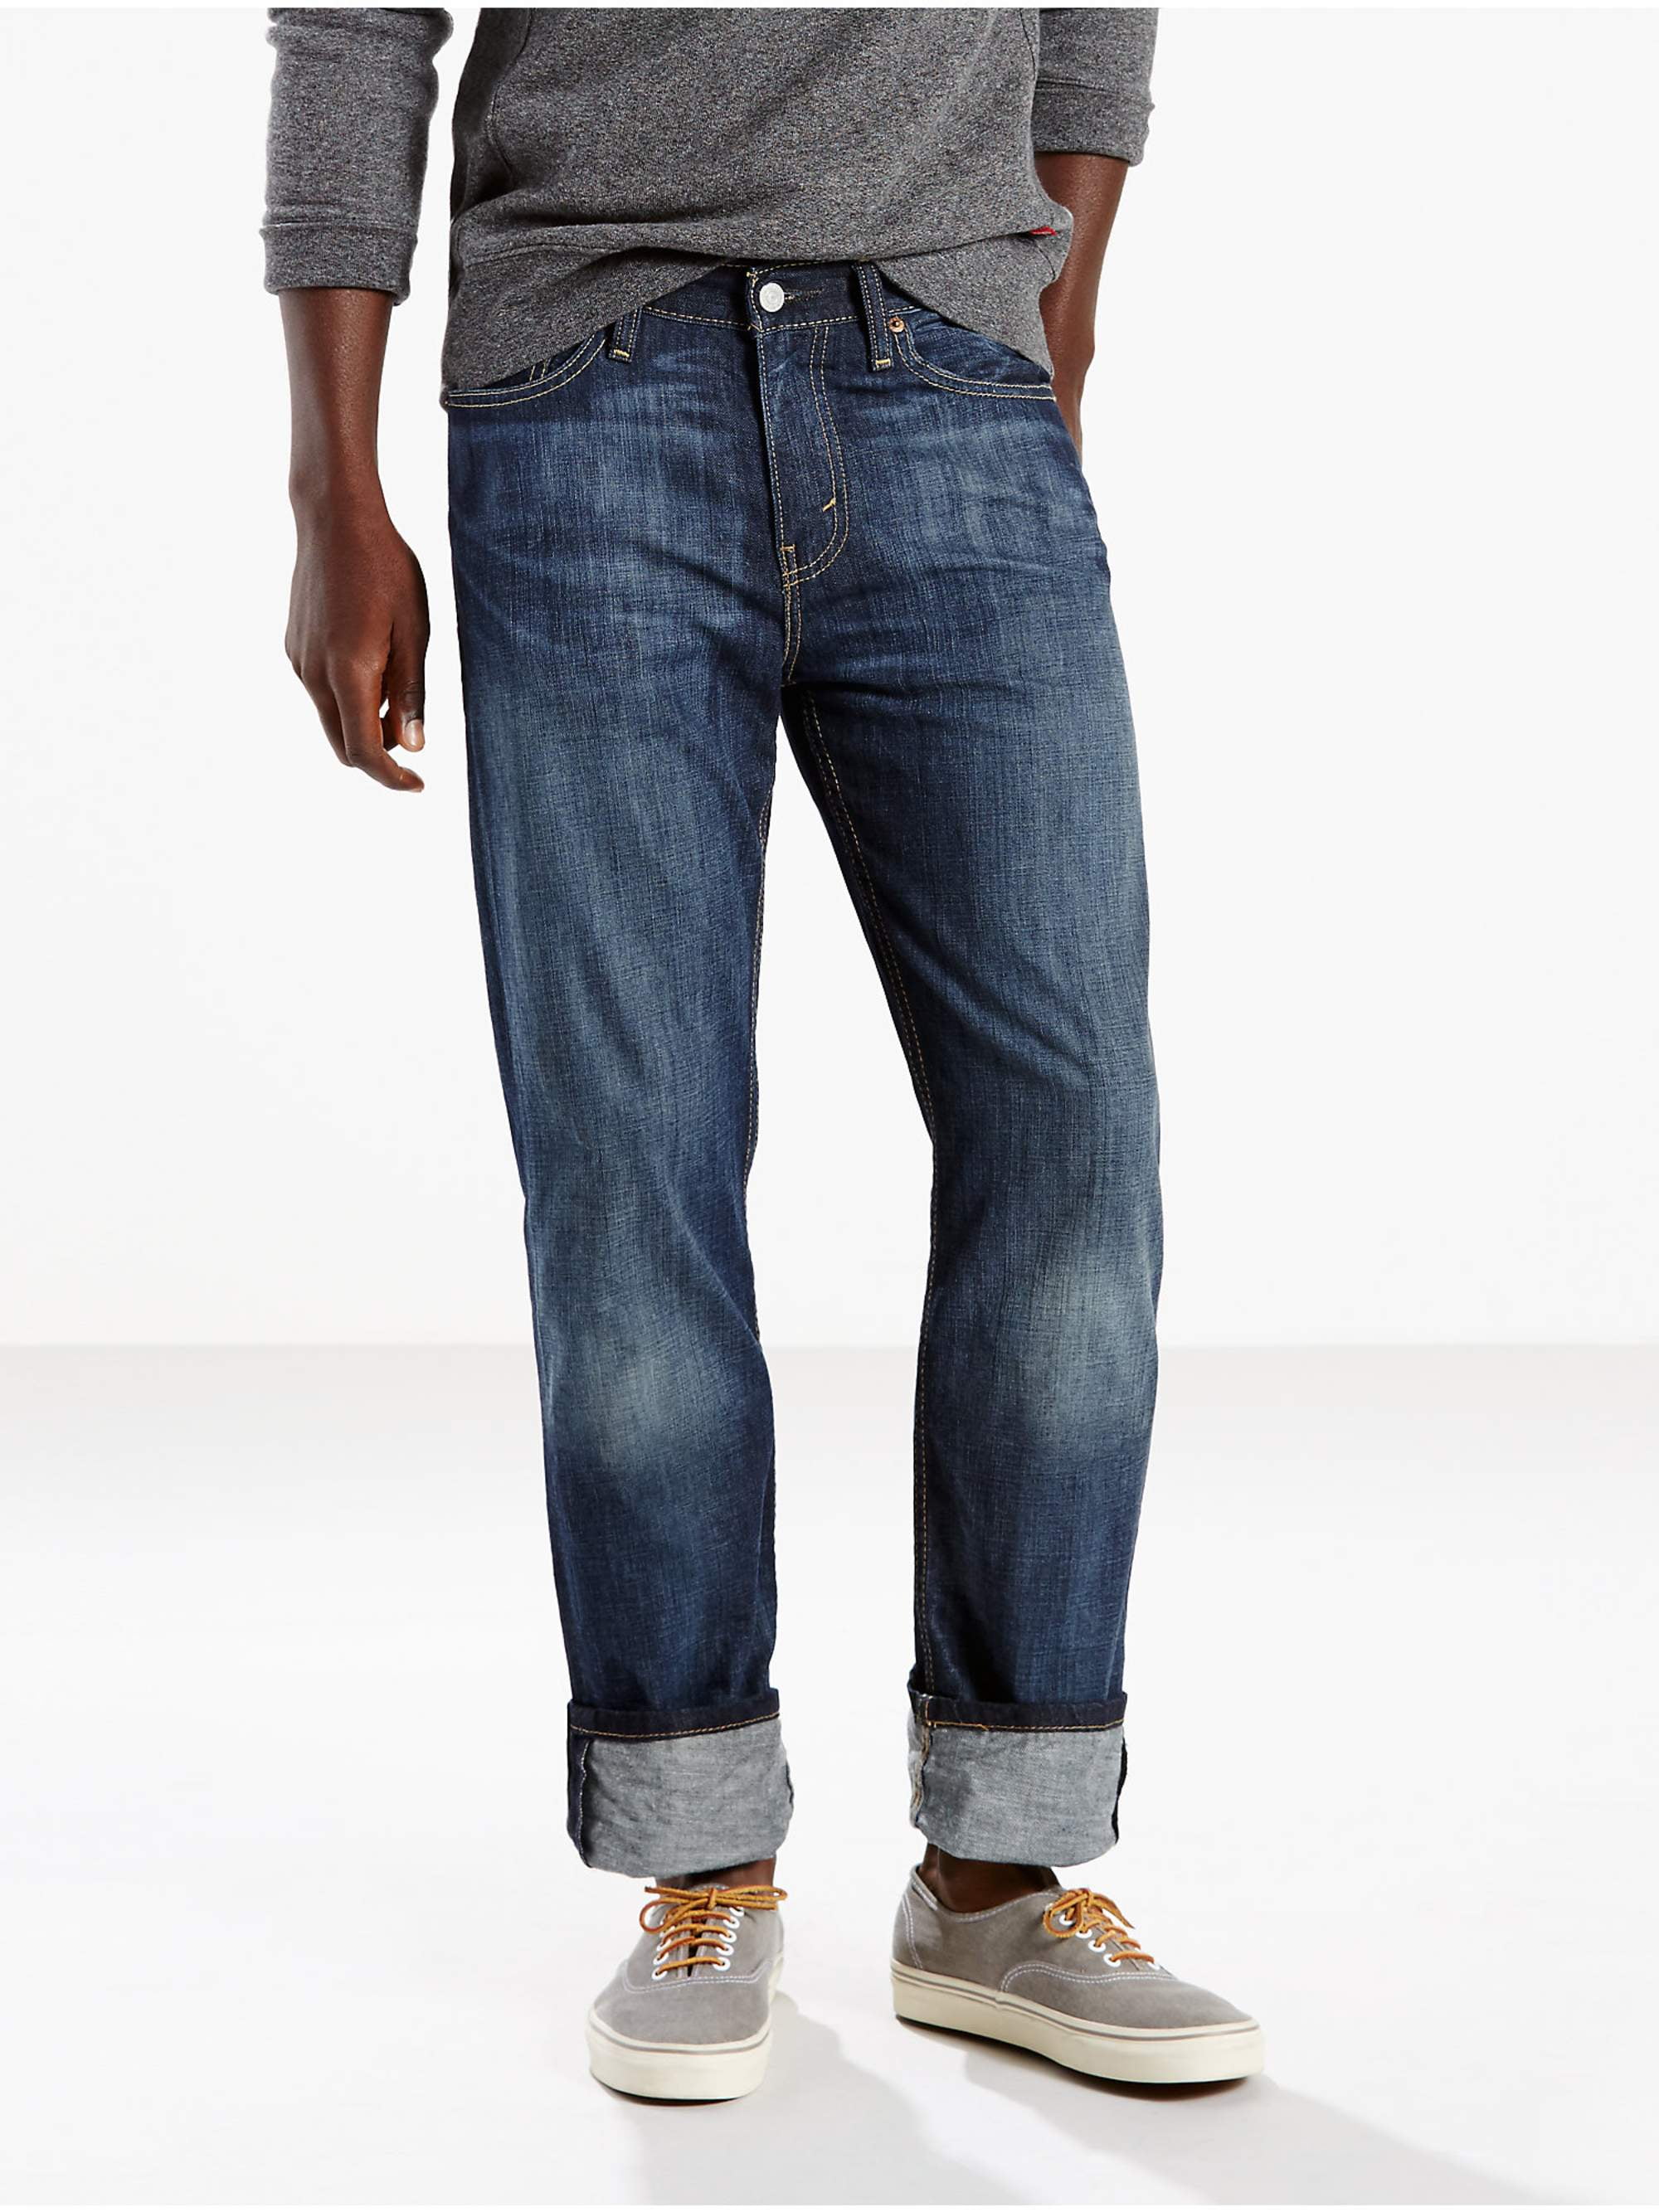 Levi's Men's 514 Straight Fit Jeans - Walmart.com